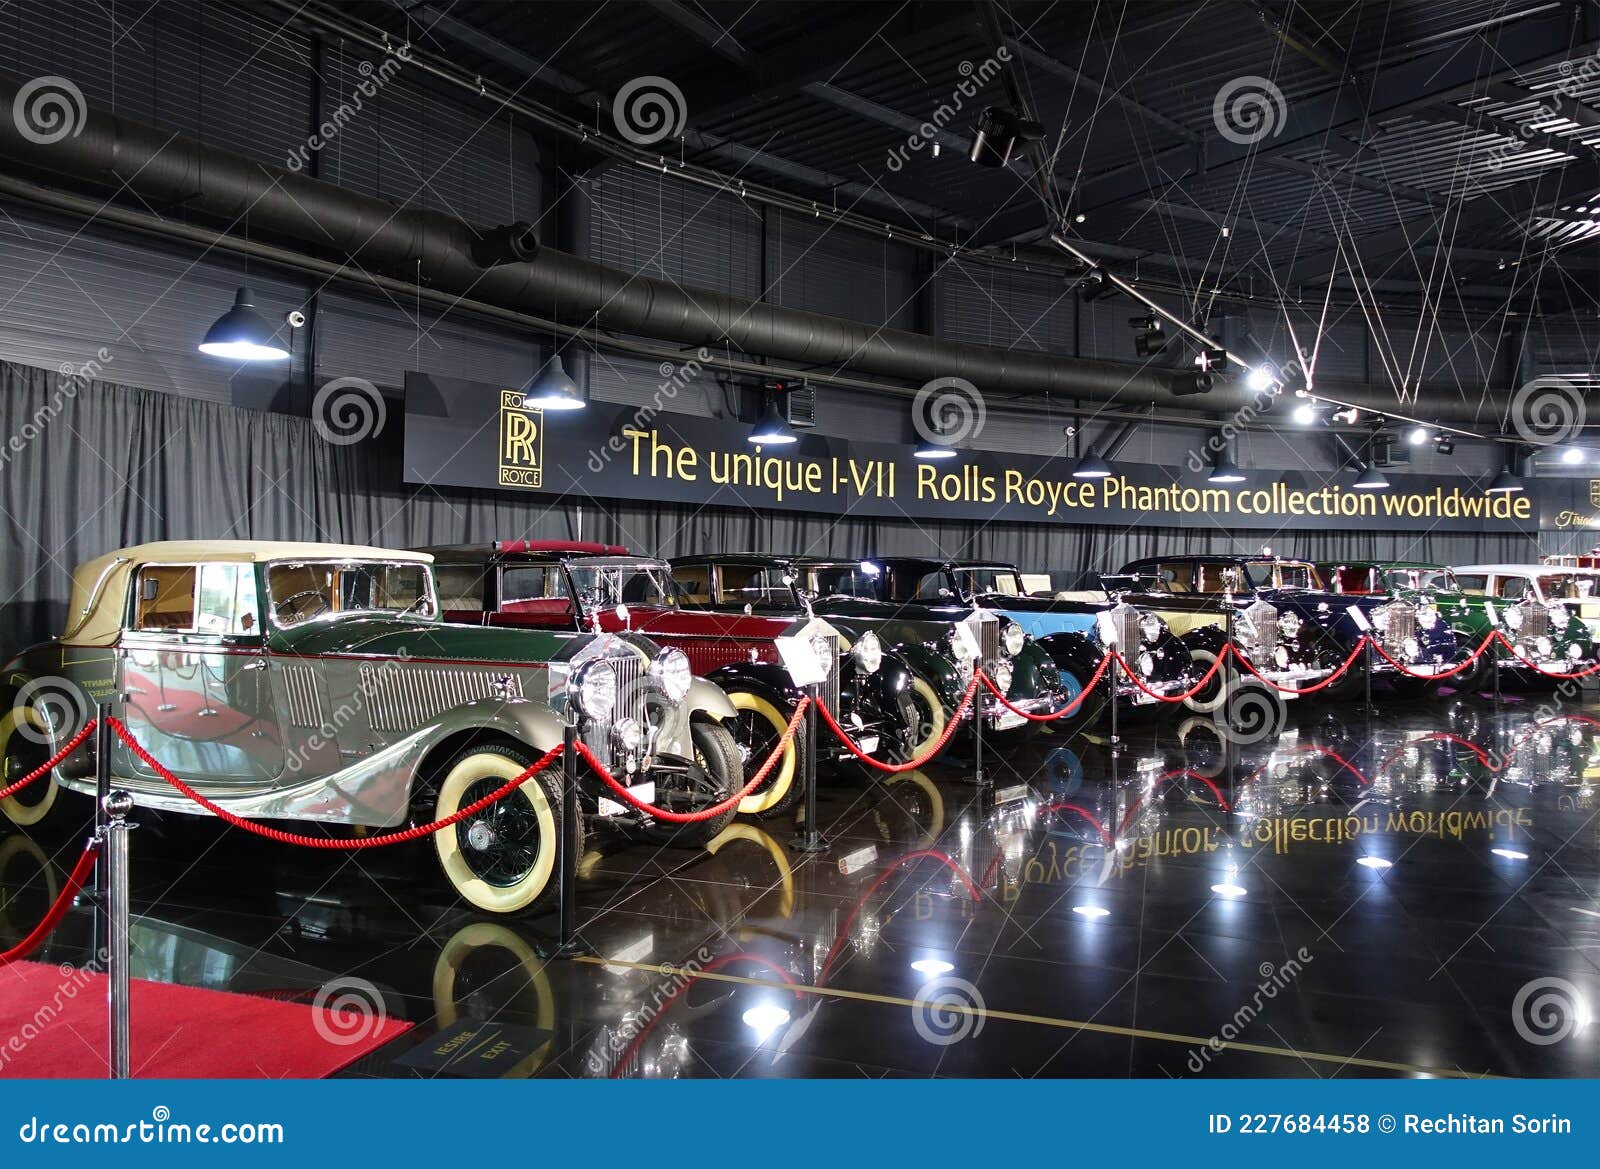 Ion Tiriac, la colección de coches que obliga a una visita